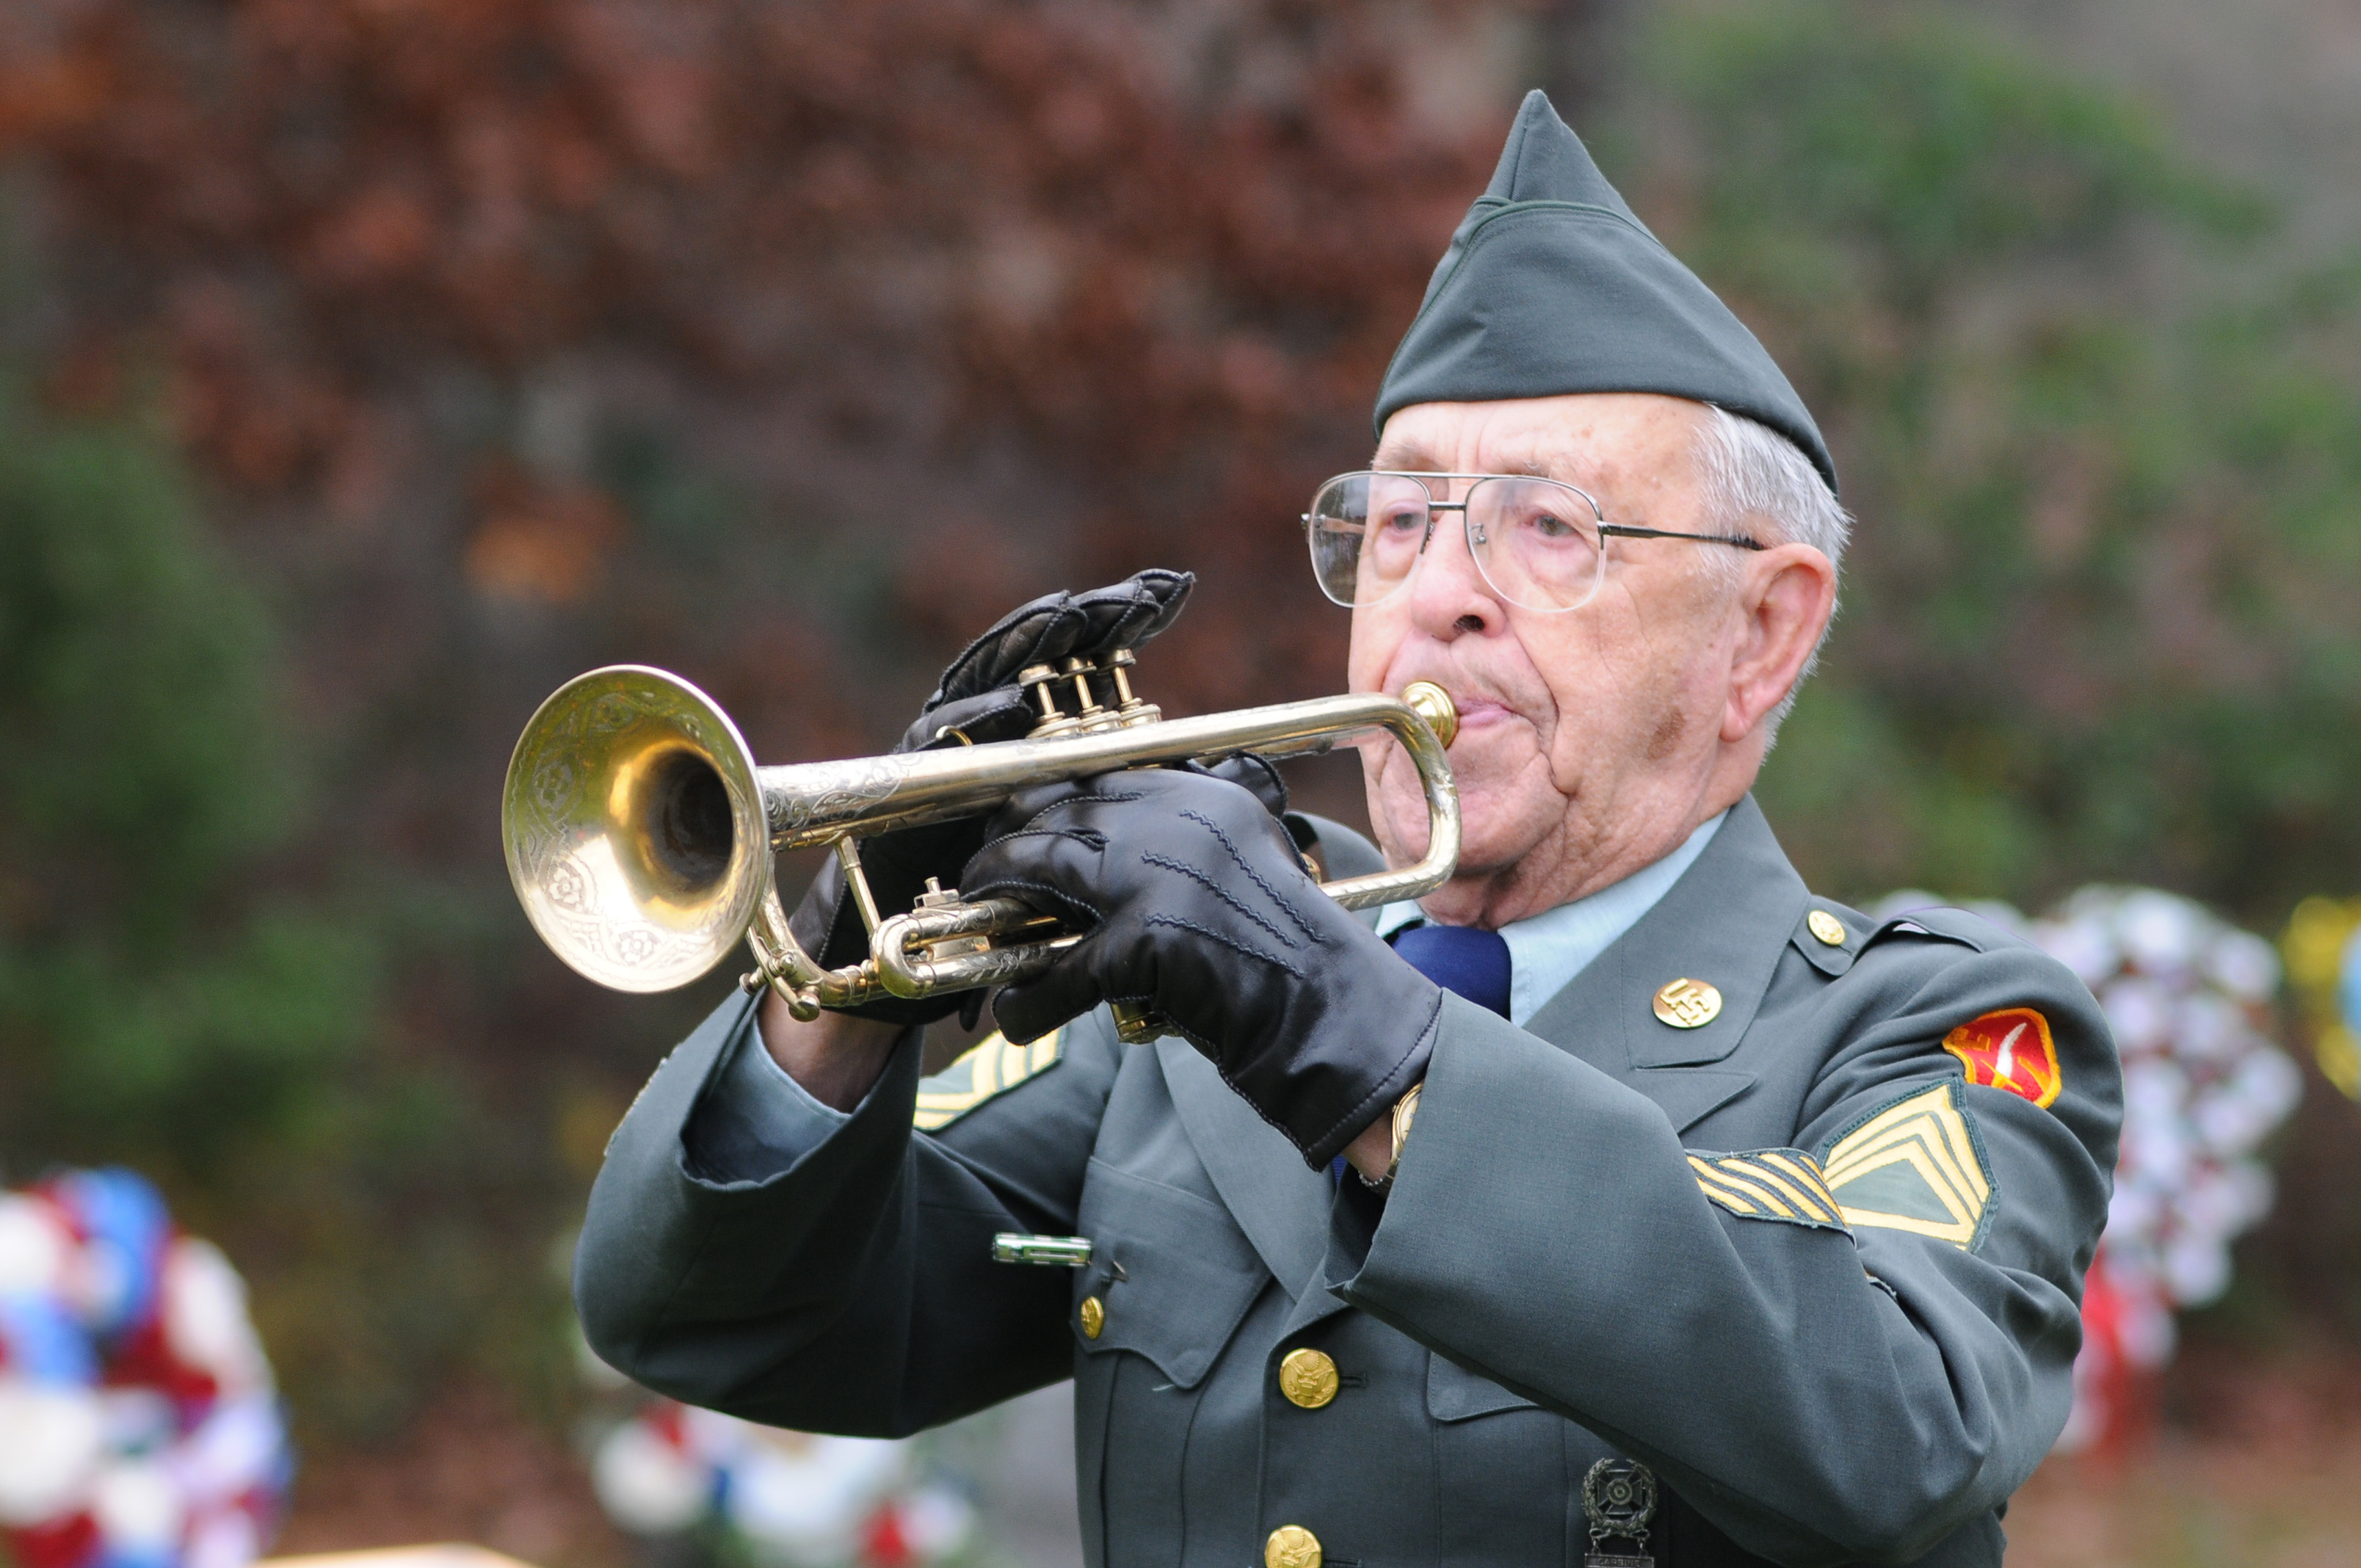 Flickr - DVIDSHUB - Veterans Day Ceremony held at the Massachusetts National Cemetery in Bourne